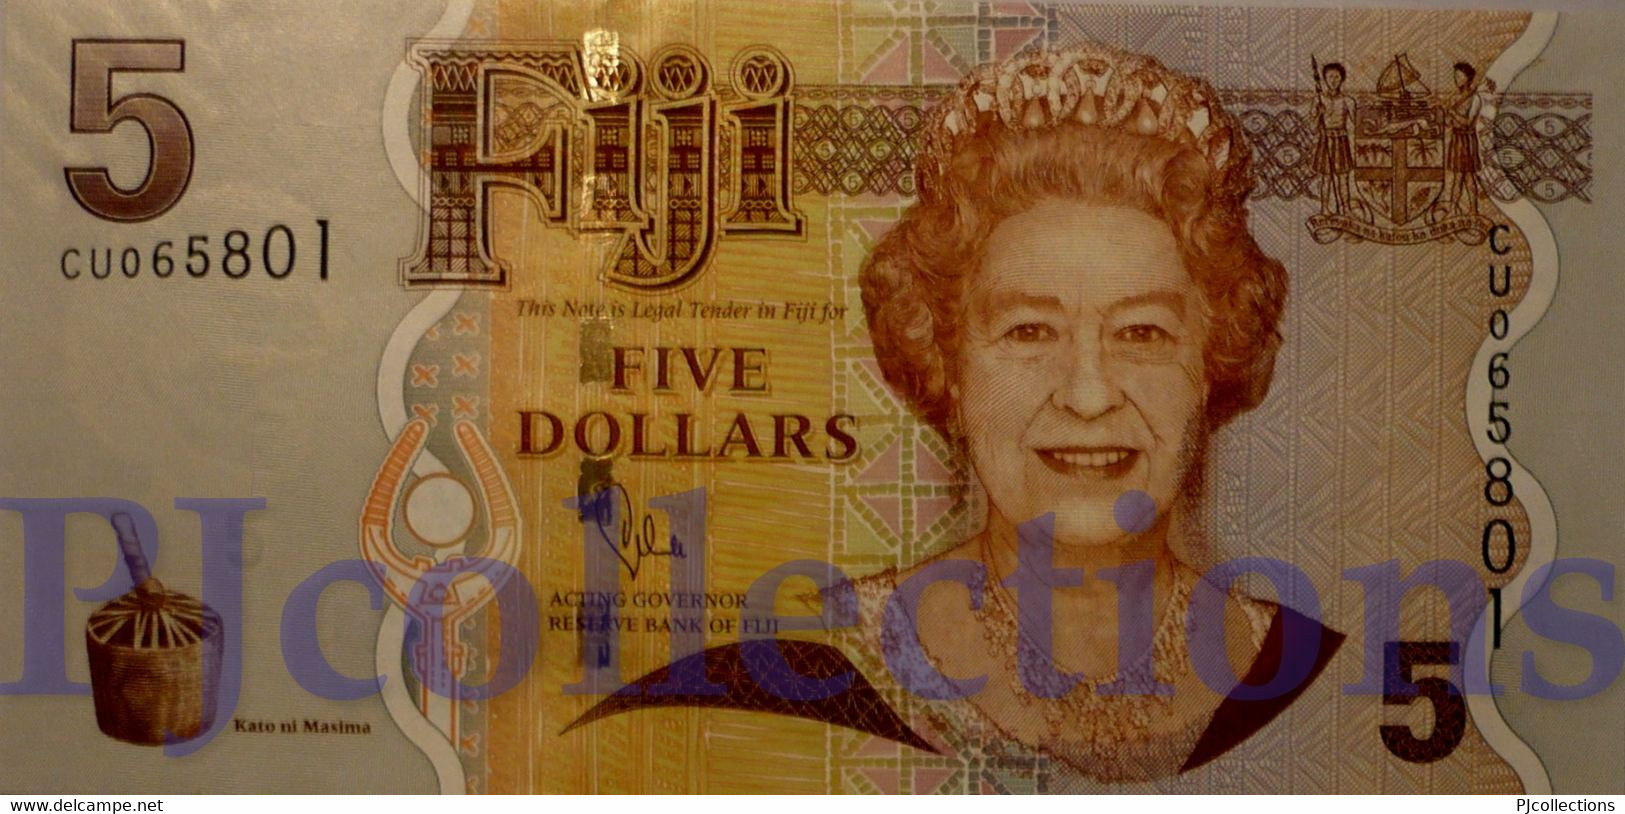 FIJI 5 DOLLARS 2007 PICK 110b UNC - Fiji